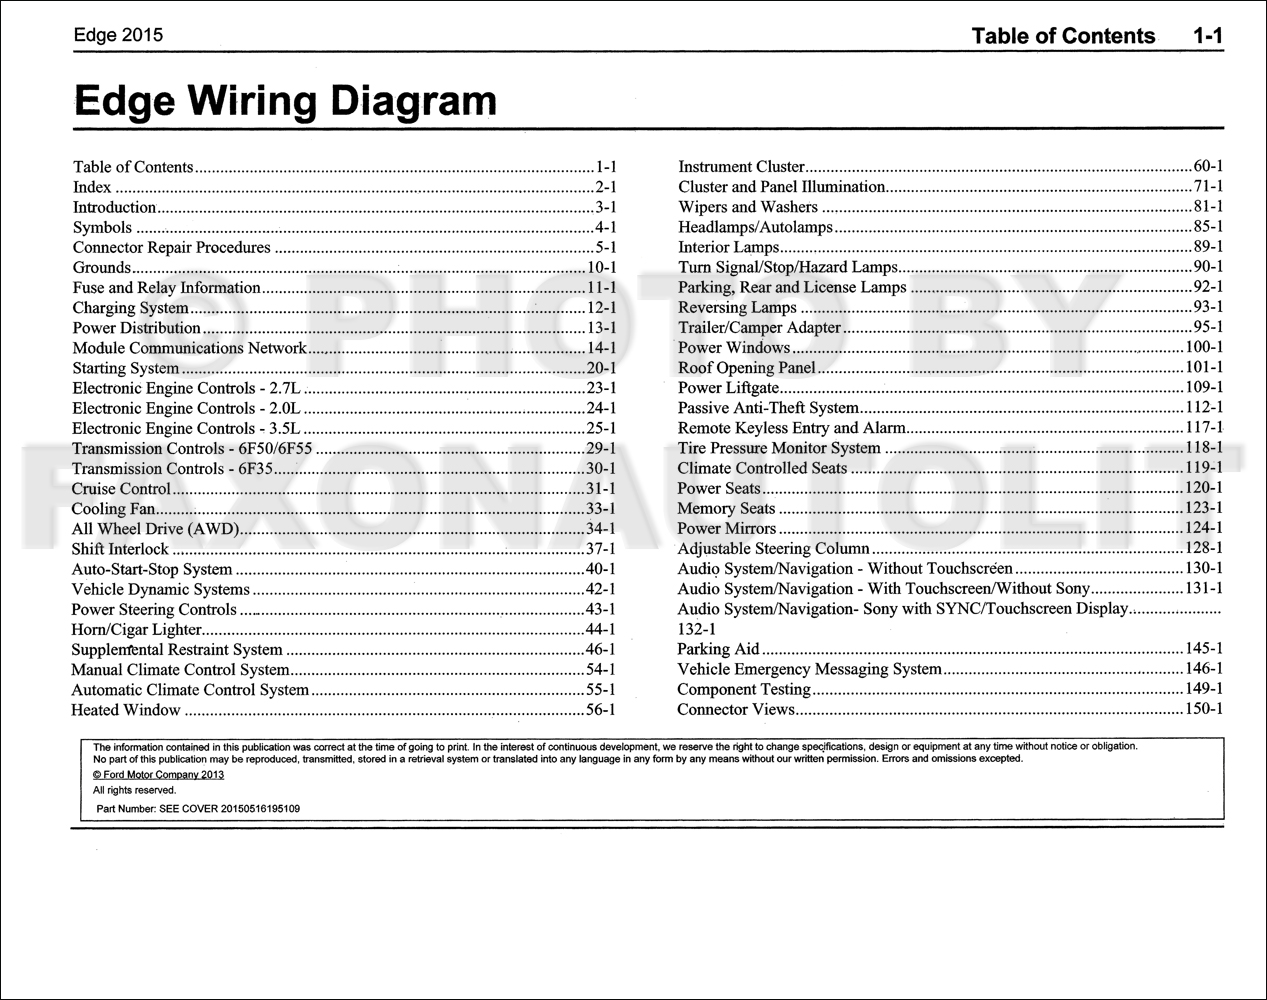 2015 Ford Edge Wiring Diagram Manual Original